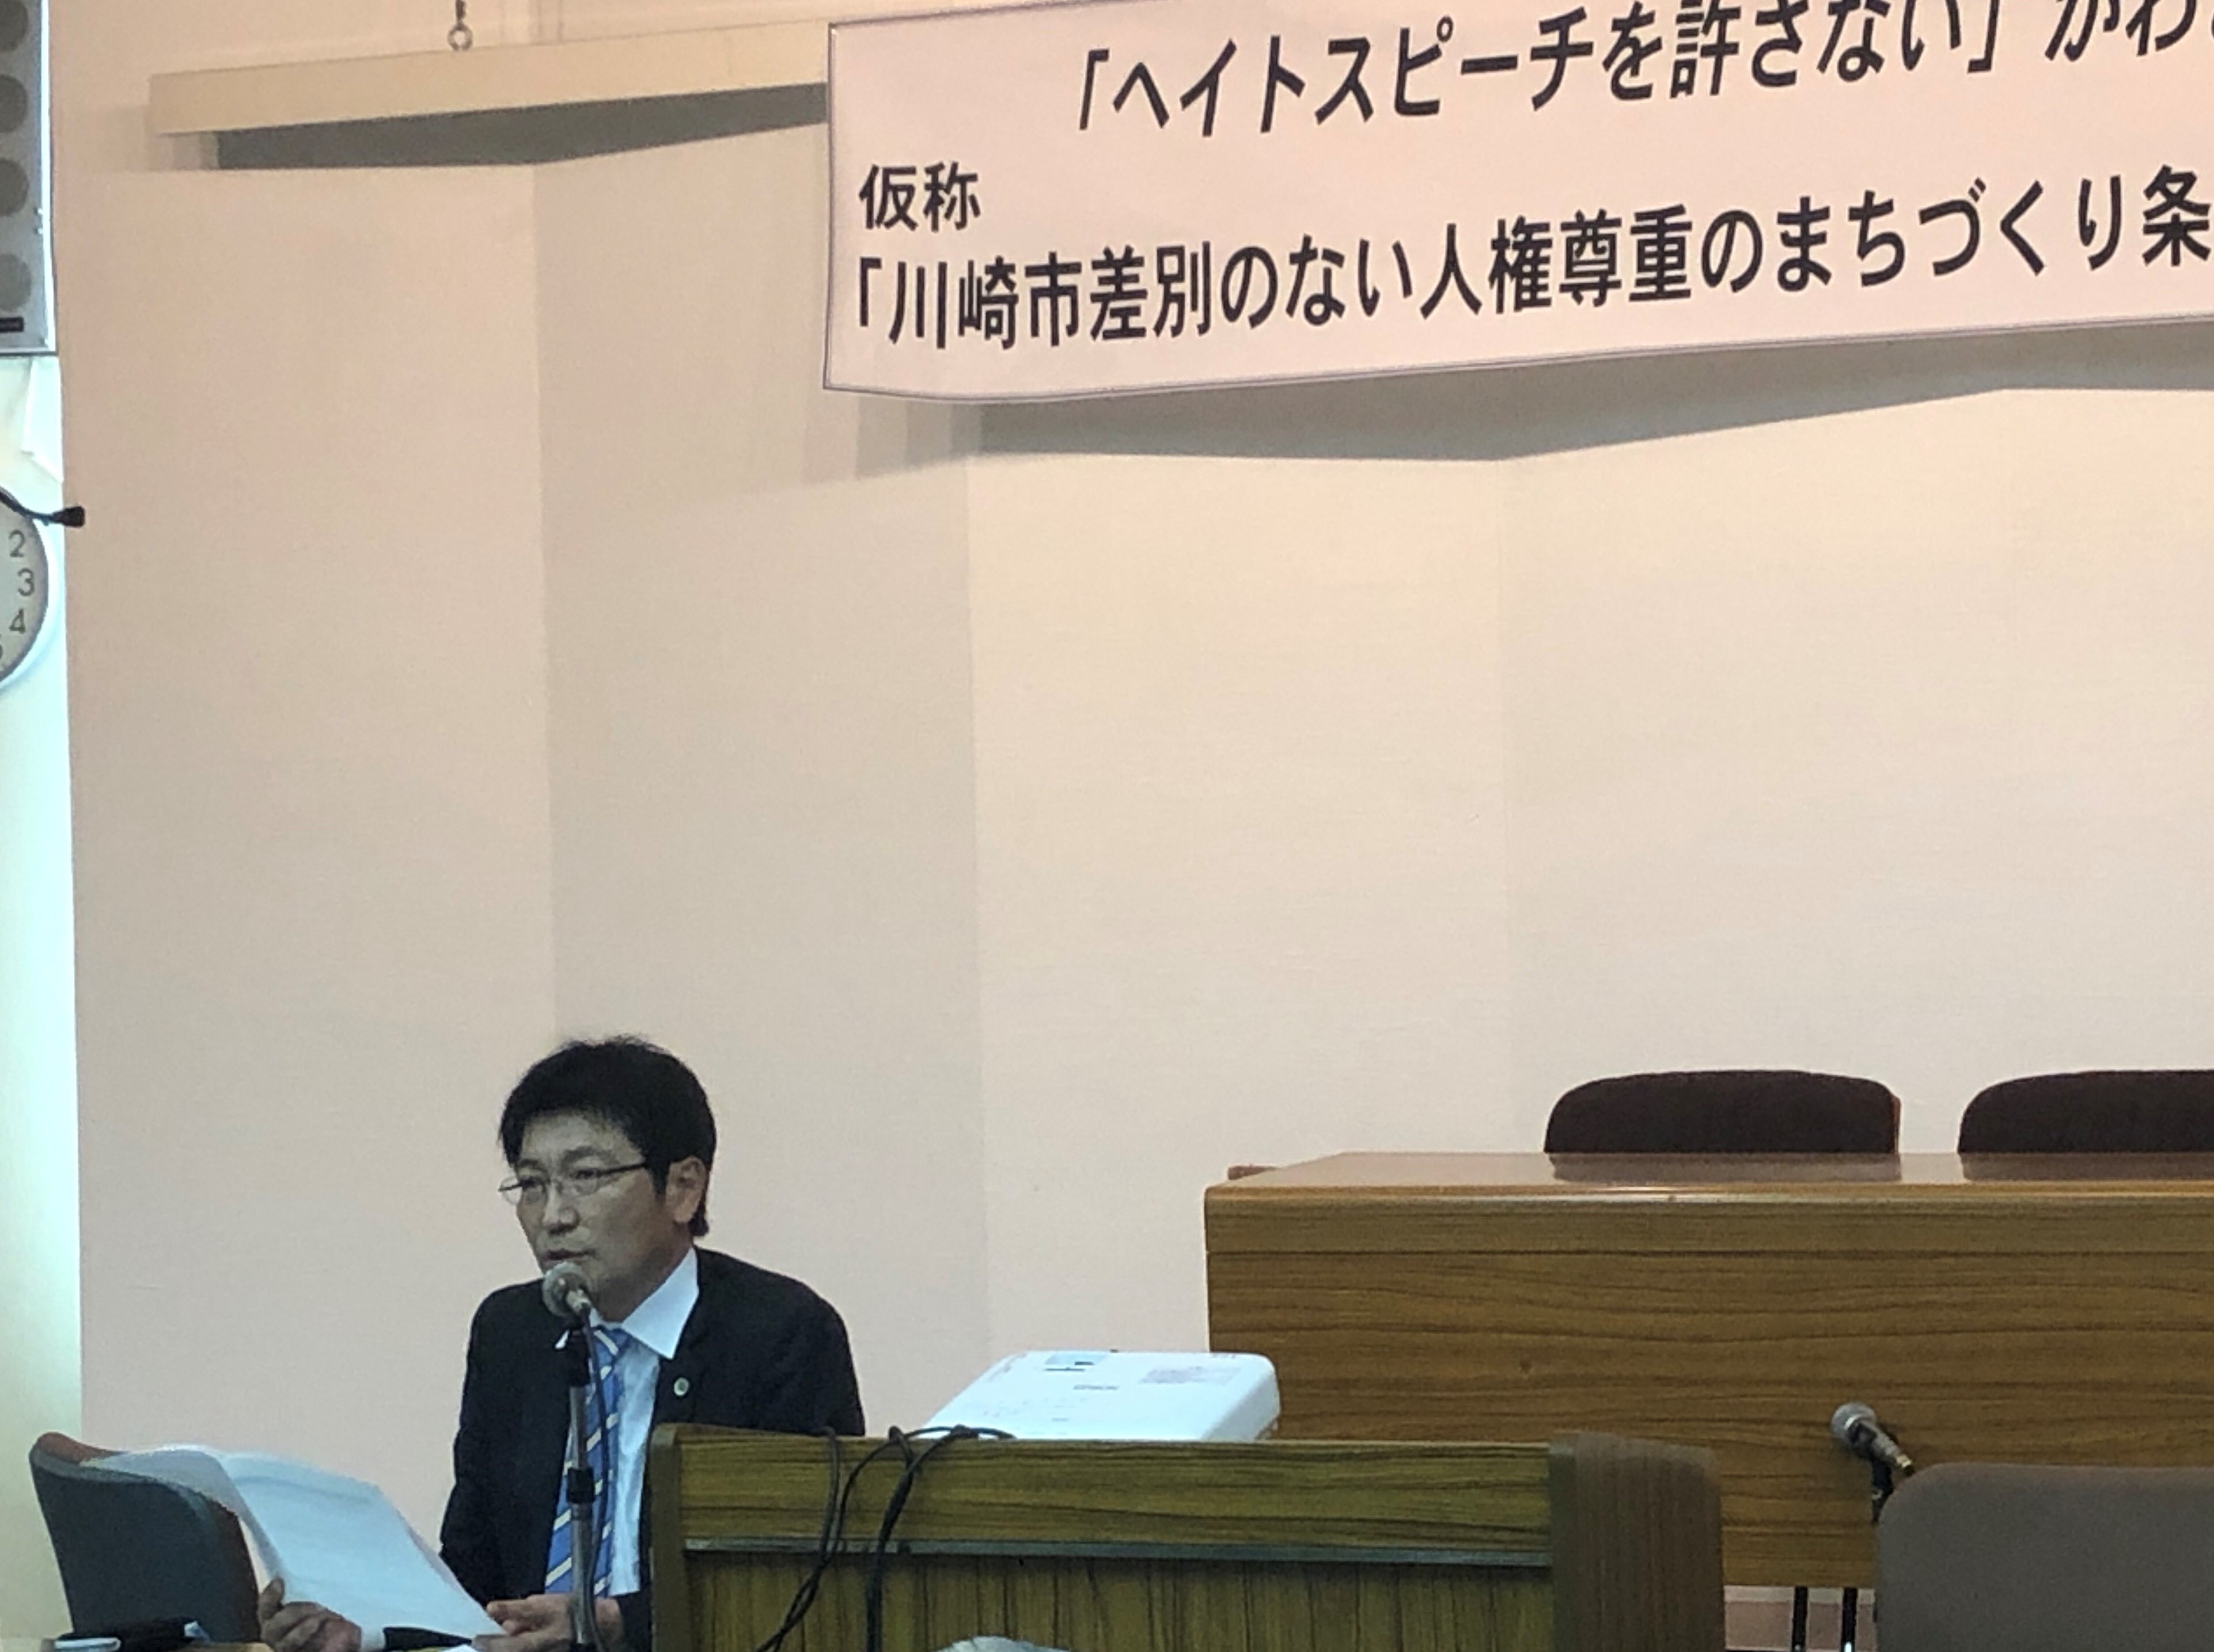 ヘイト解消の大きな一歩「川崎市差別のない人権尊重のまちづくり条例」